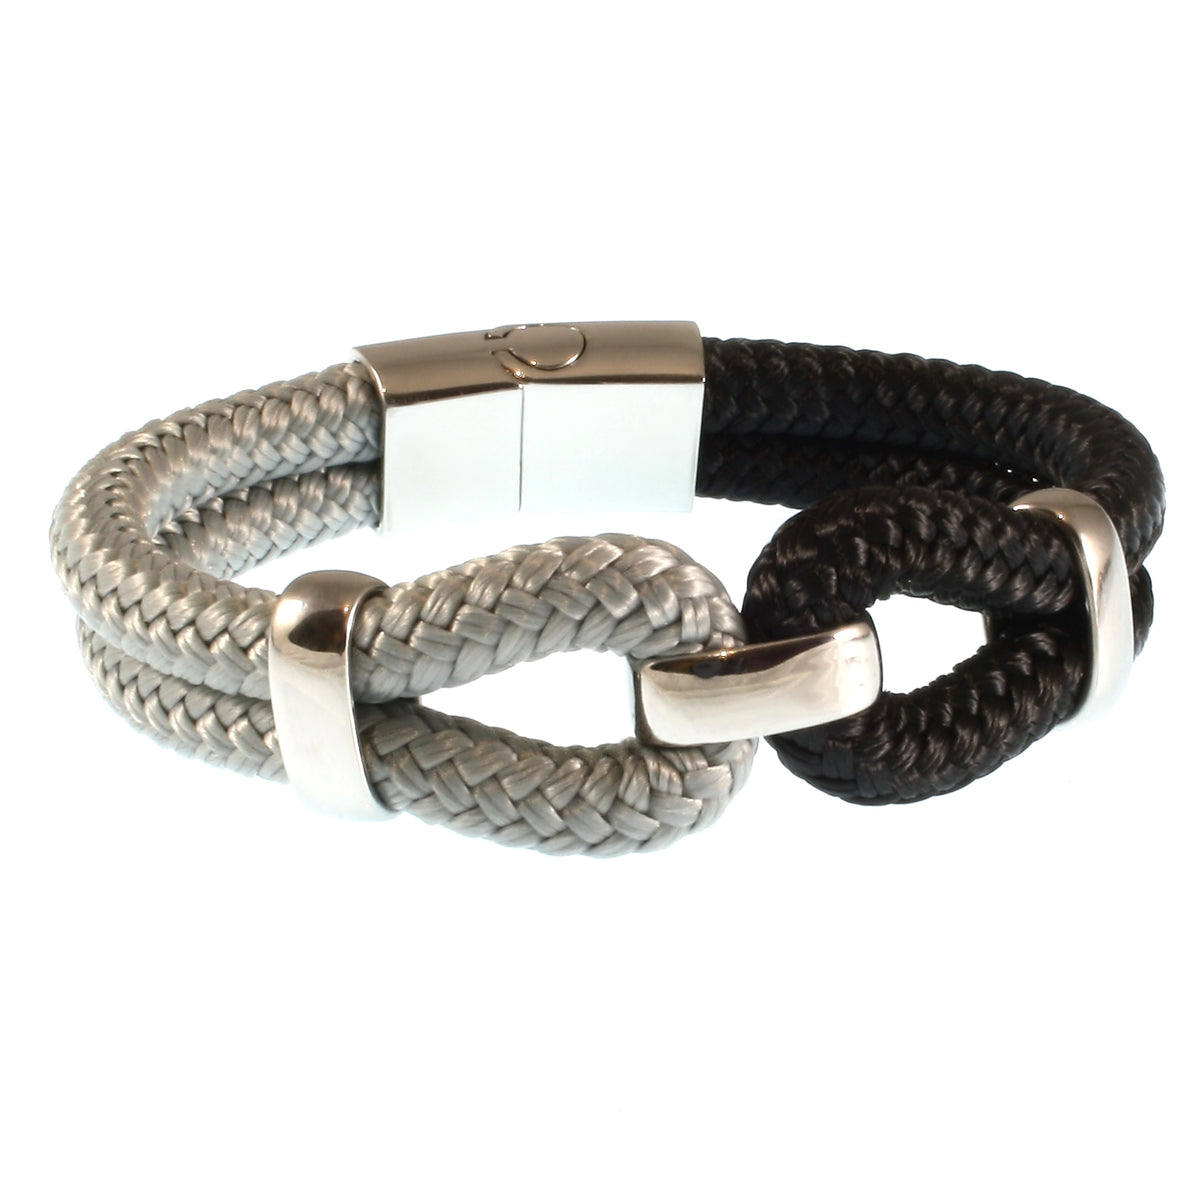 Damen-Segeltau-armband-roma-schwarz-grau-geflochten-Edelstahlverschluss-vorn-wavepirate-shop-st